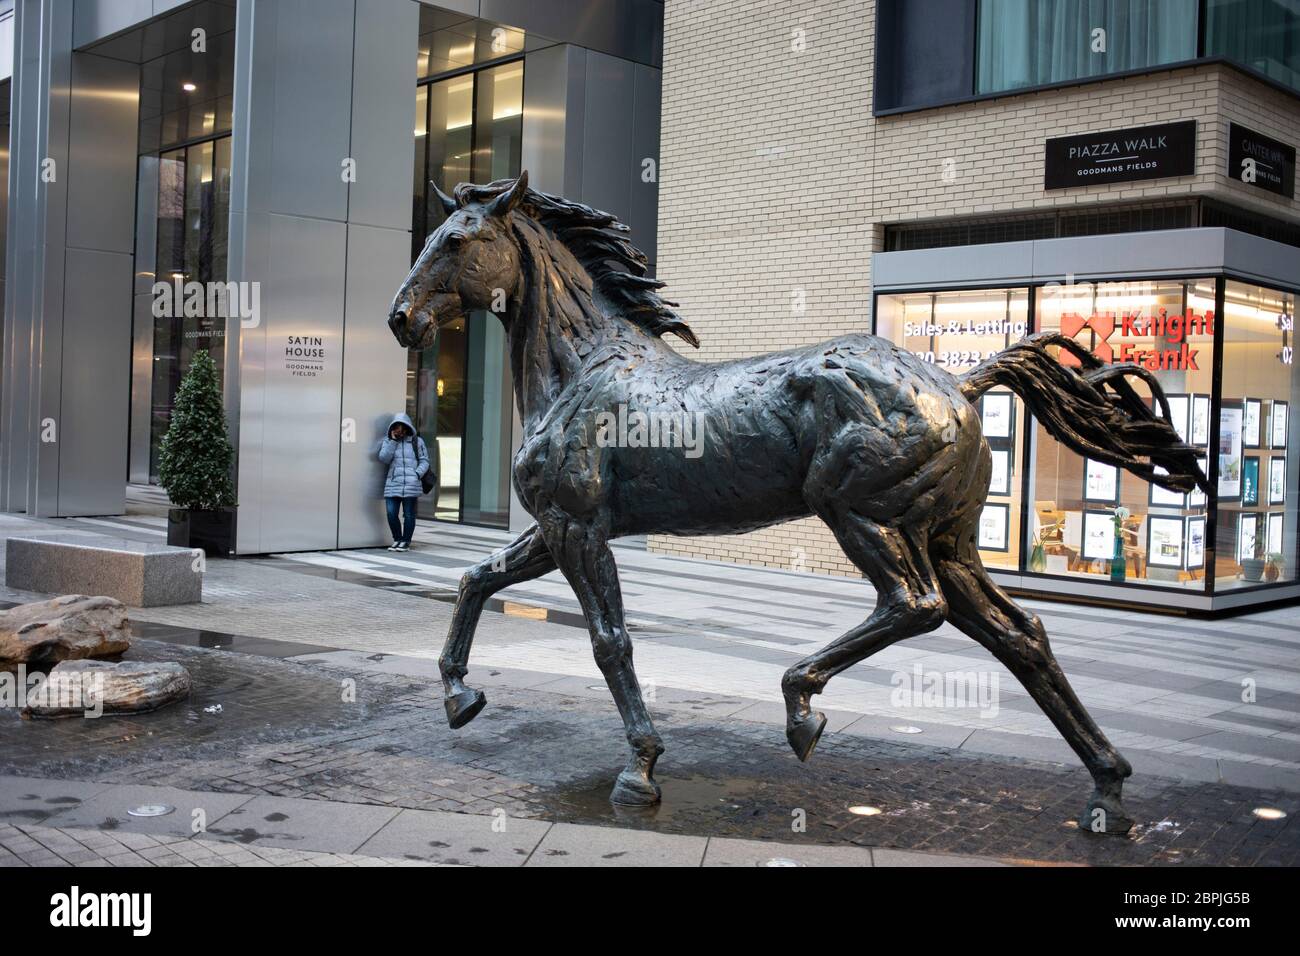 Cavalli di bronzo creati dallo scultore britannico Hamish Mackie che galoppano attraverso l'acqua nella piazza pubblica di Goodman's Fields ad Aldgate il 24 febbraio 2020 a Londra, Regno Unito. Foto Stock